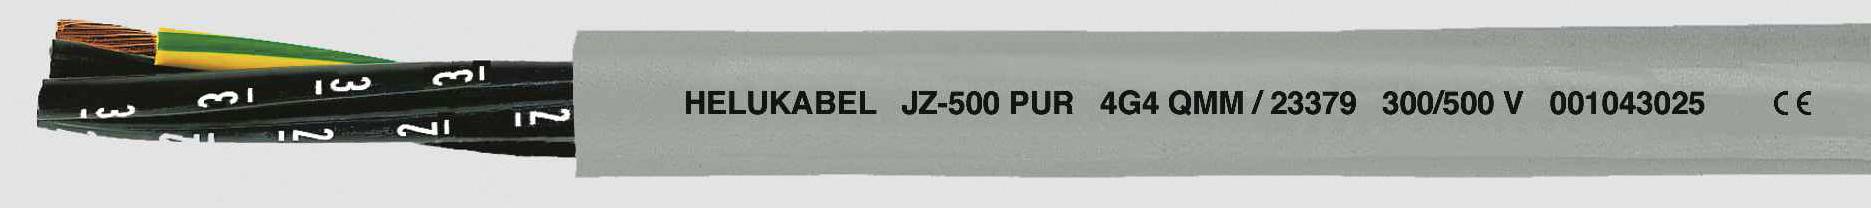 HELUKABEL JZ-500 PUR Steuerleitung 3 G 2.50 mm² Grau 23374-1000 1000 m